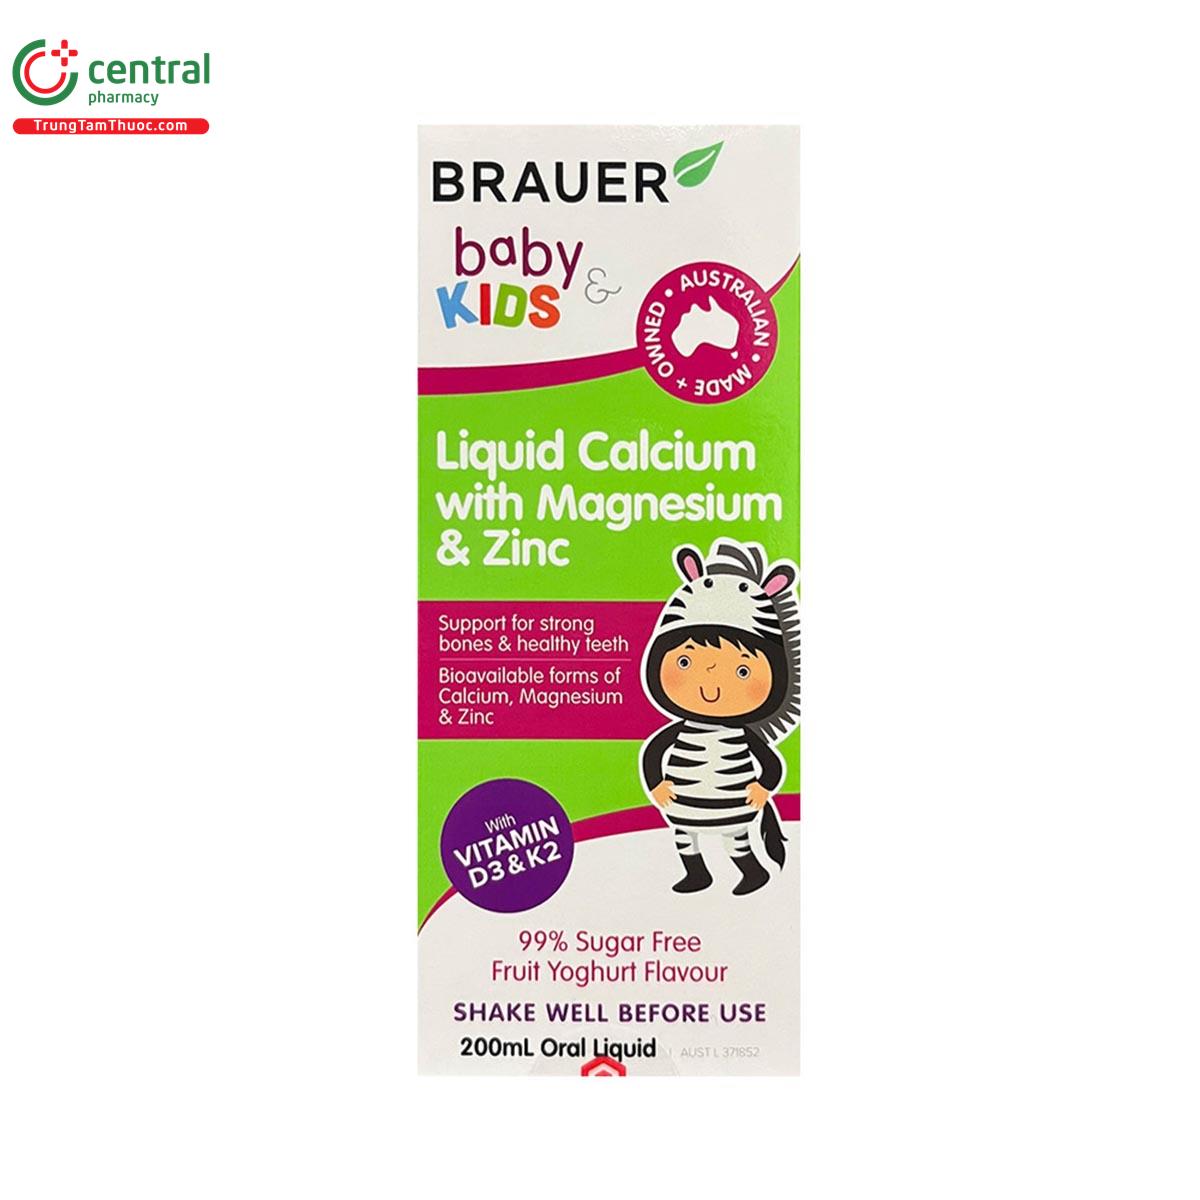 brauer baby kids liquid calcium with magnesium zinc 2 Q6637